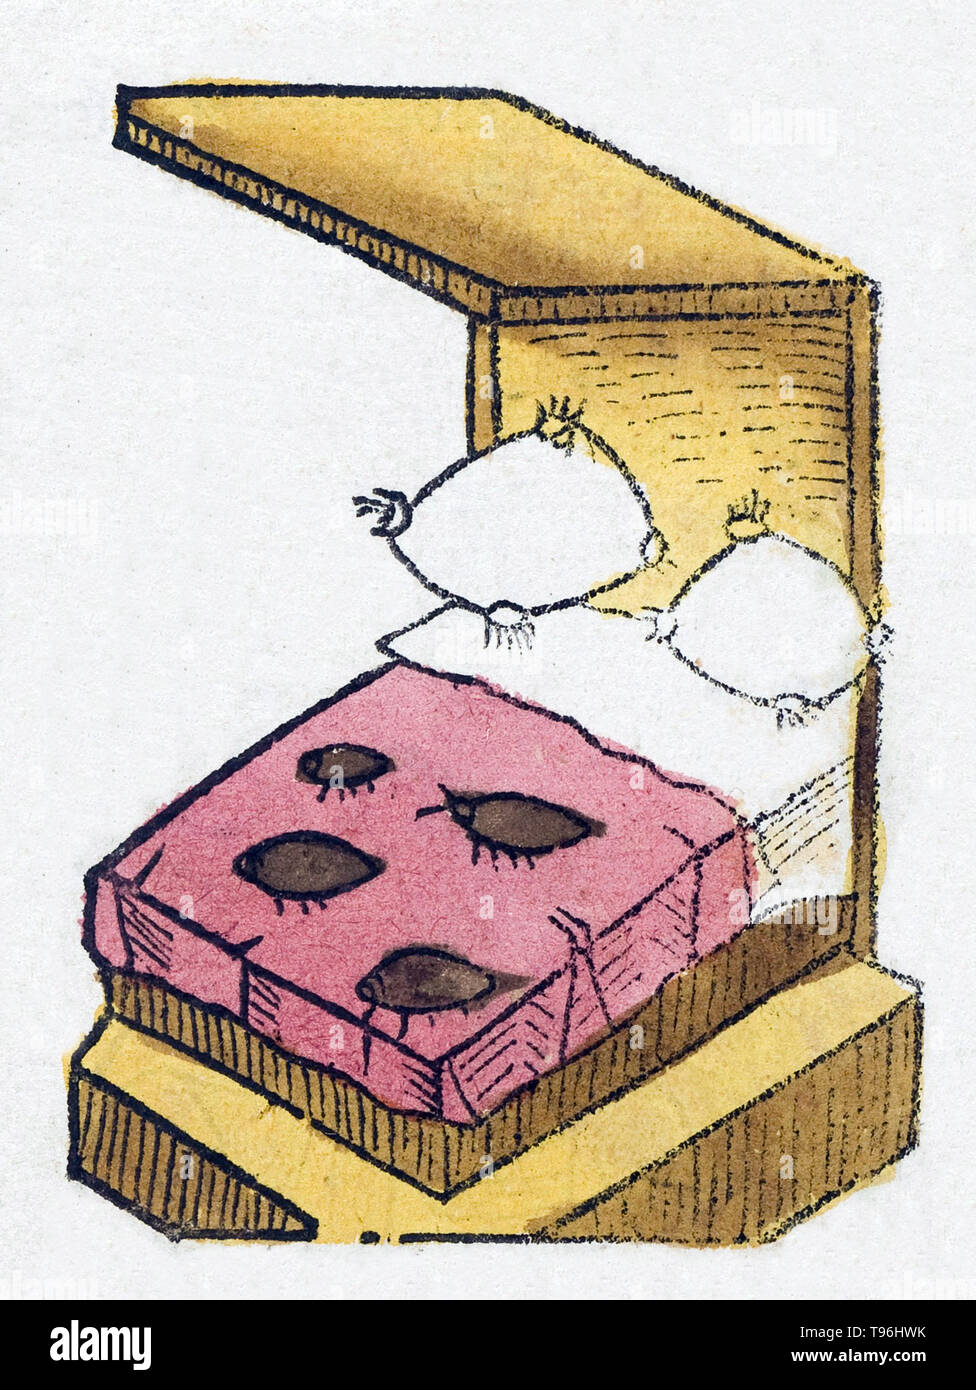 Gli scarafaggi sono insetti parassiti in genere lepinotus che alimenti esclusivamente sul sangue. Cimici del letto sono stati conosciuti come parassiti umani per migliaia di anni. L' Hortus Sanitatis (giardino di salute), la prima storia naturale enciclopedia, è stata pubblicata da Jacob Meydenbach in Germania, 1491. Egli descrive le piante e gli animali (sia reale e mitica) insieme con i minerali e di vari mestieri, con il loro valore medicinale e metodo di preparazione. La colorata a mano in xilografia illustrazioni sono stilizzati ma spesso facilmente riconoscibile. 1547 edition. Foto Stock